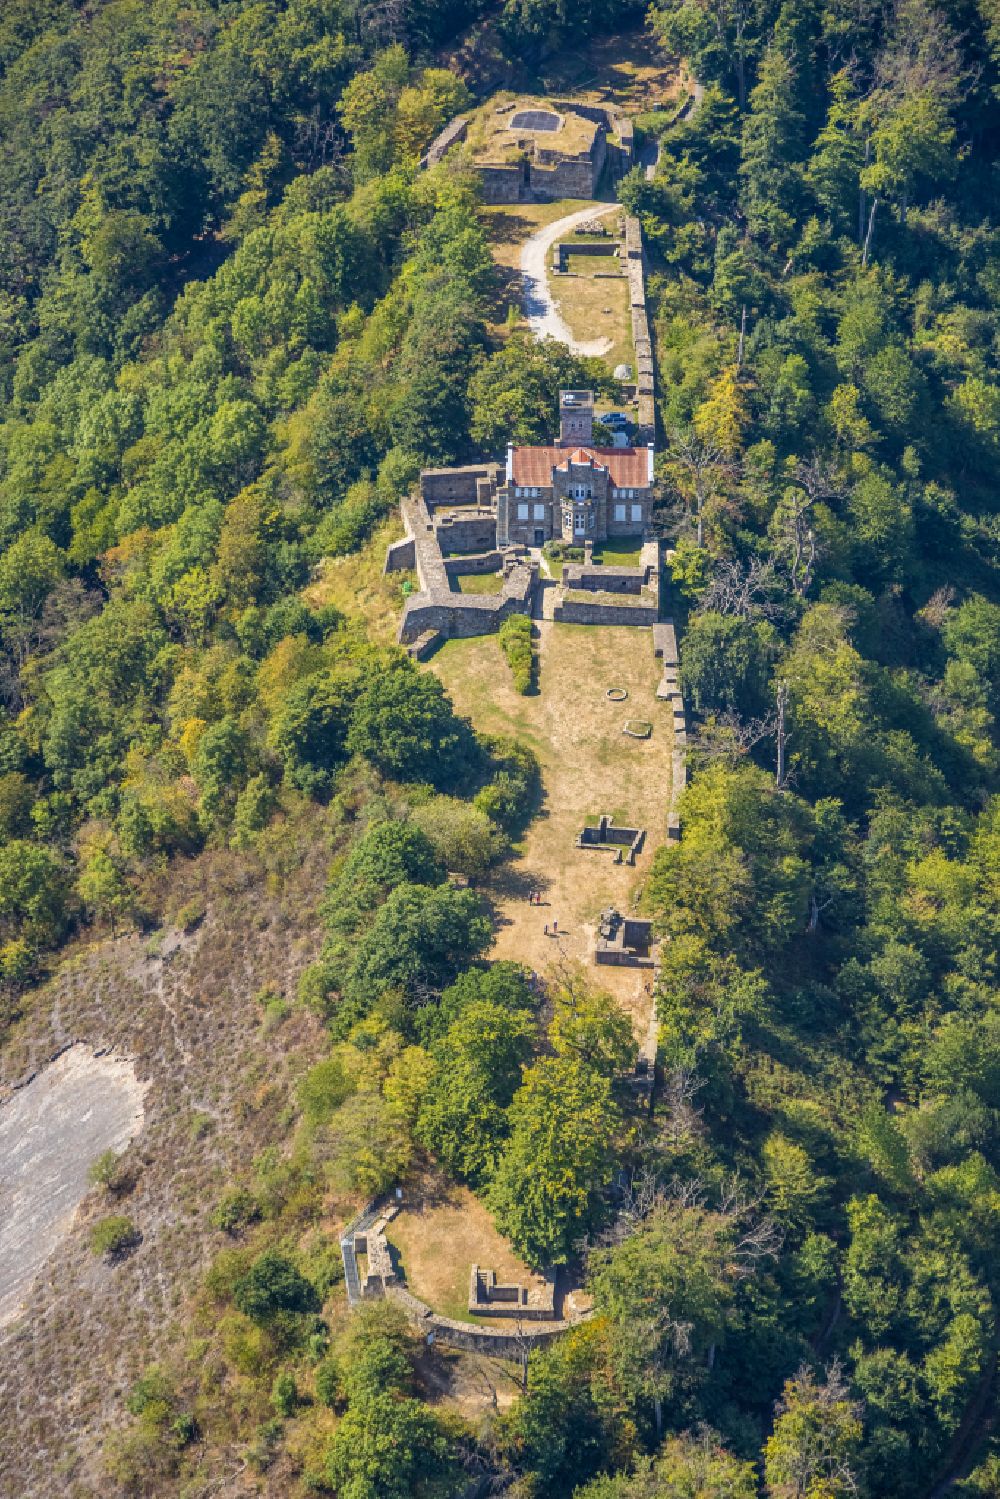 Luftaufnahme Hattingen - Burg Isenburg Am Isenberg in Hattingen im Bundesland Nordrhein-Westfalen, Deutschland